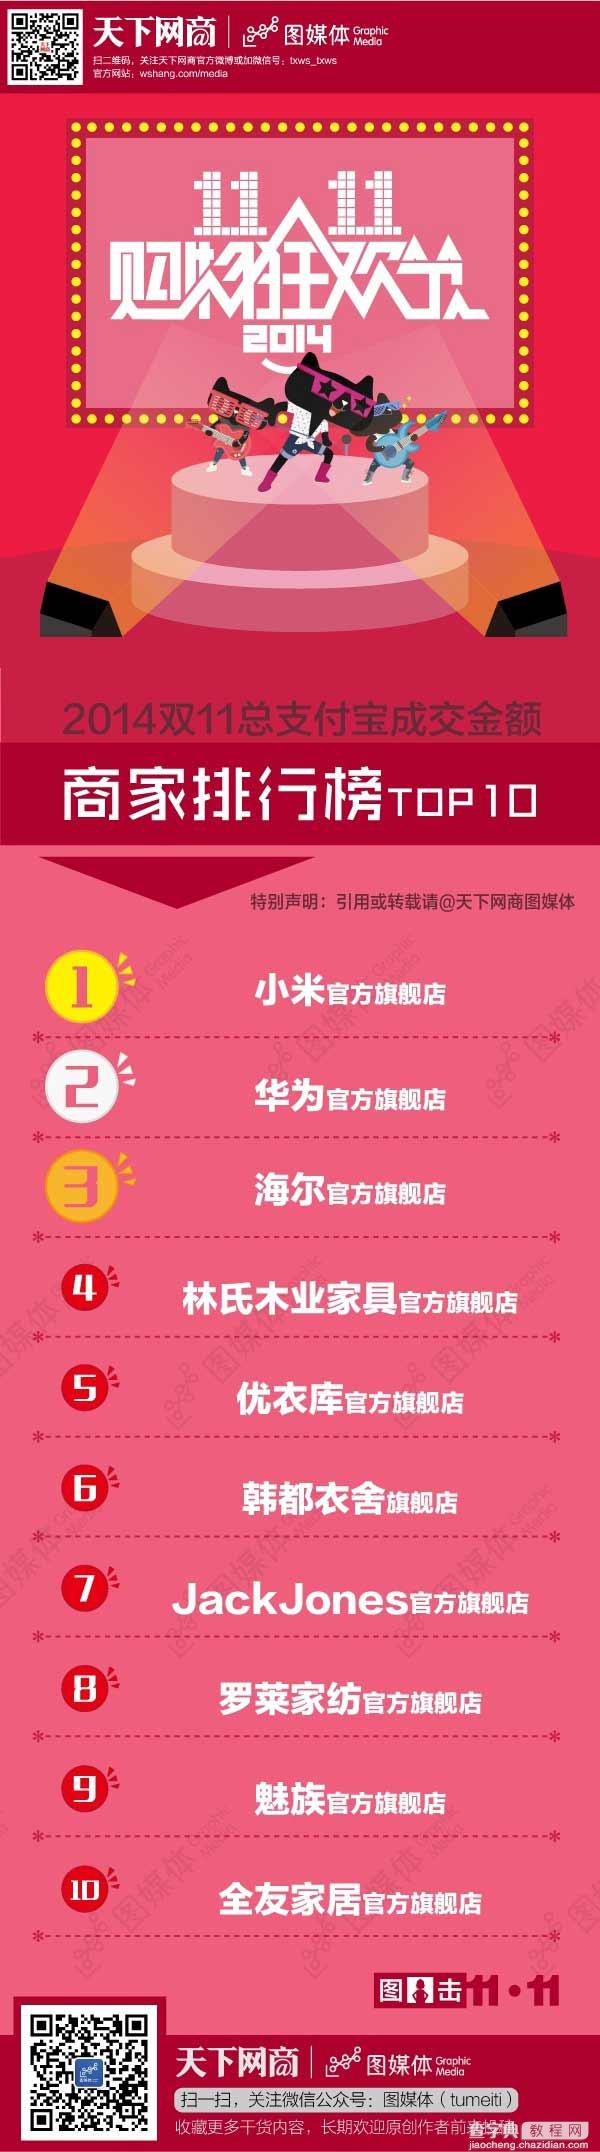 2014双11单店销售额Top10：小米/华为/魅族齐上榜(最新数据)1